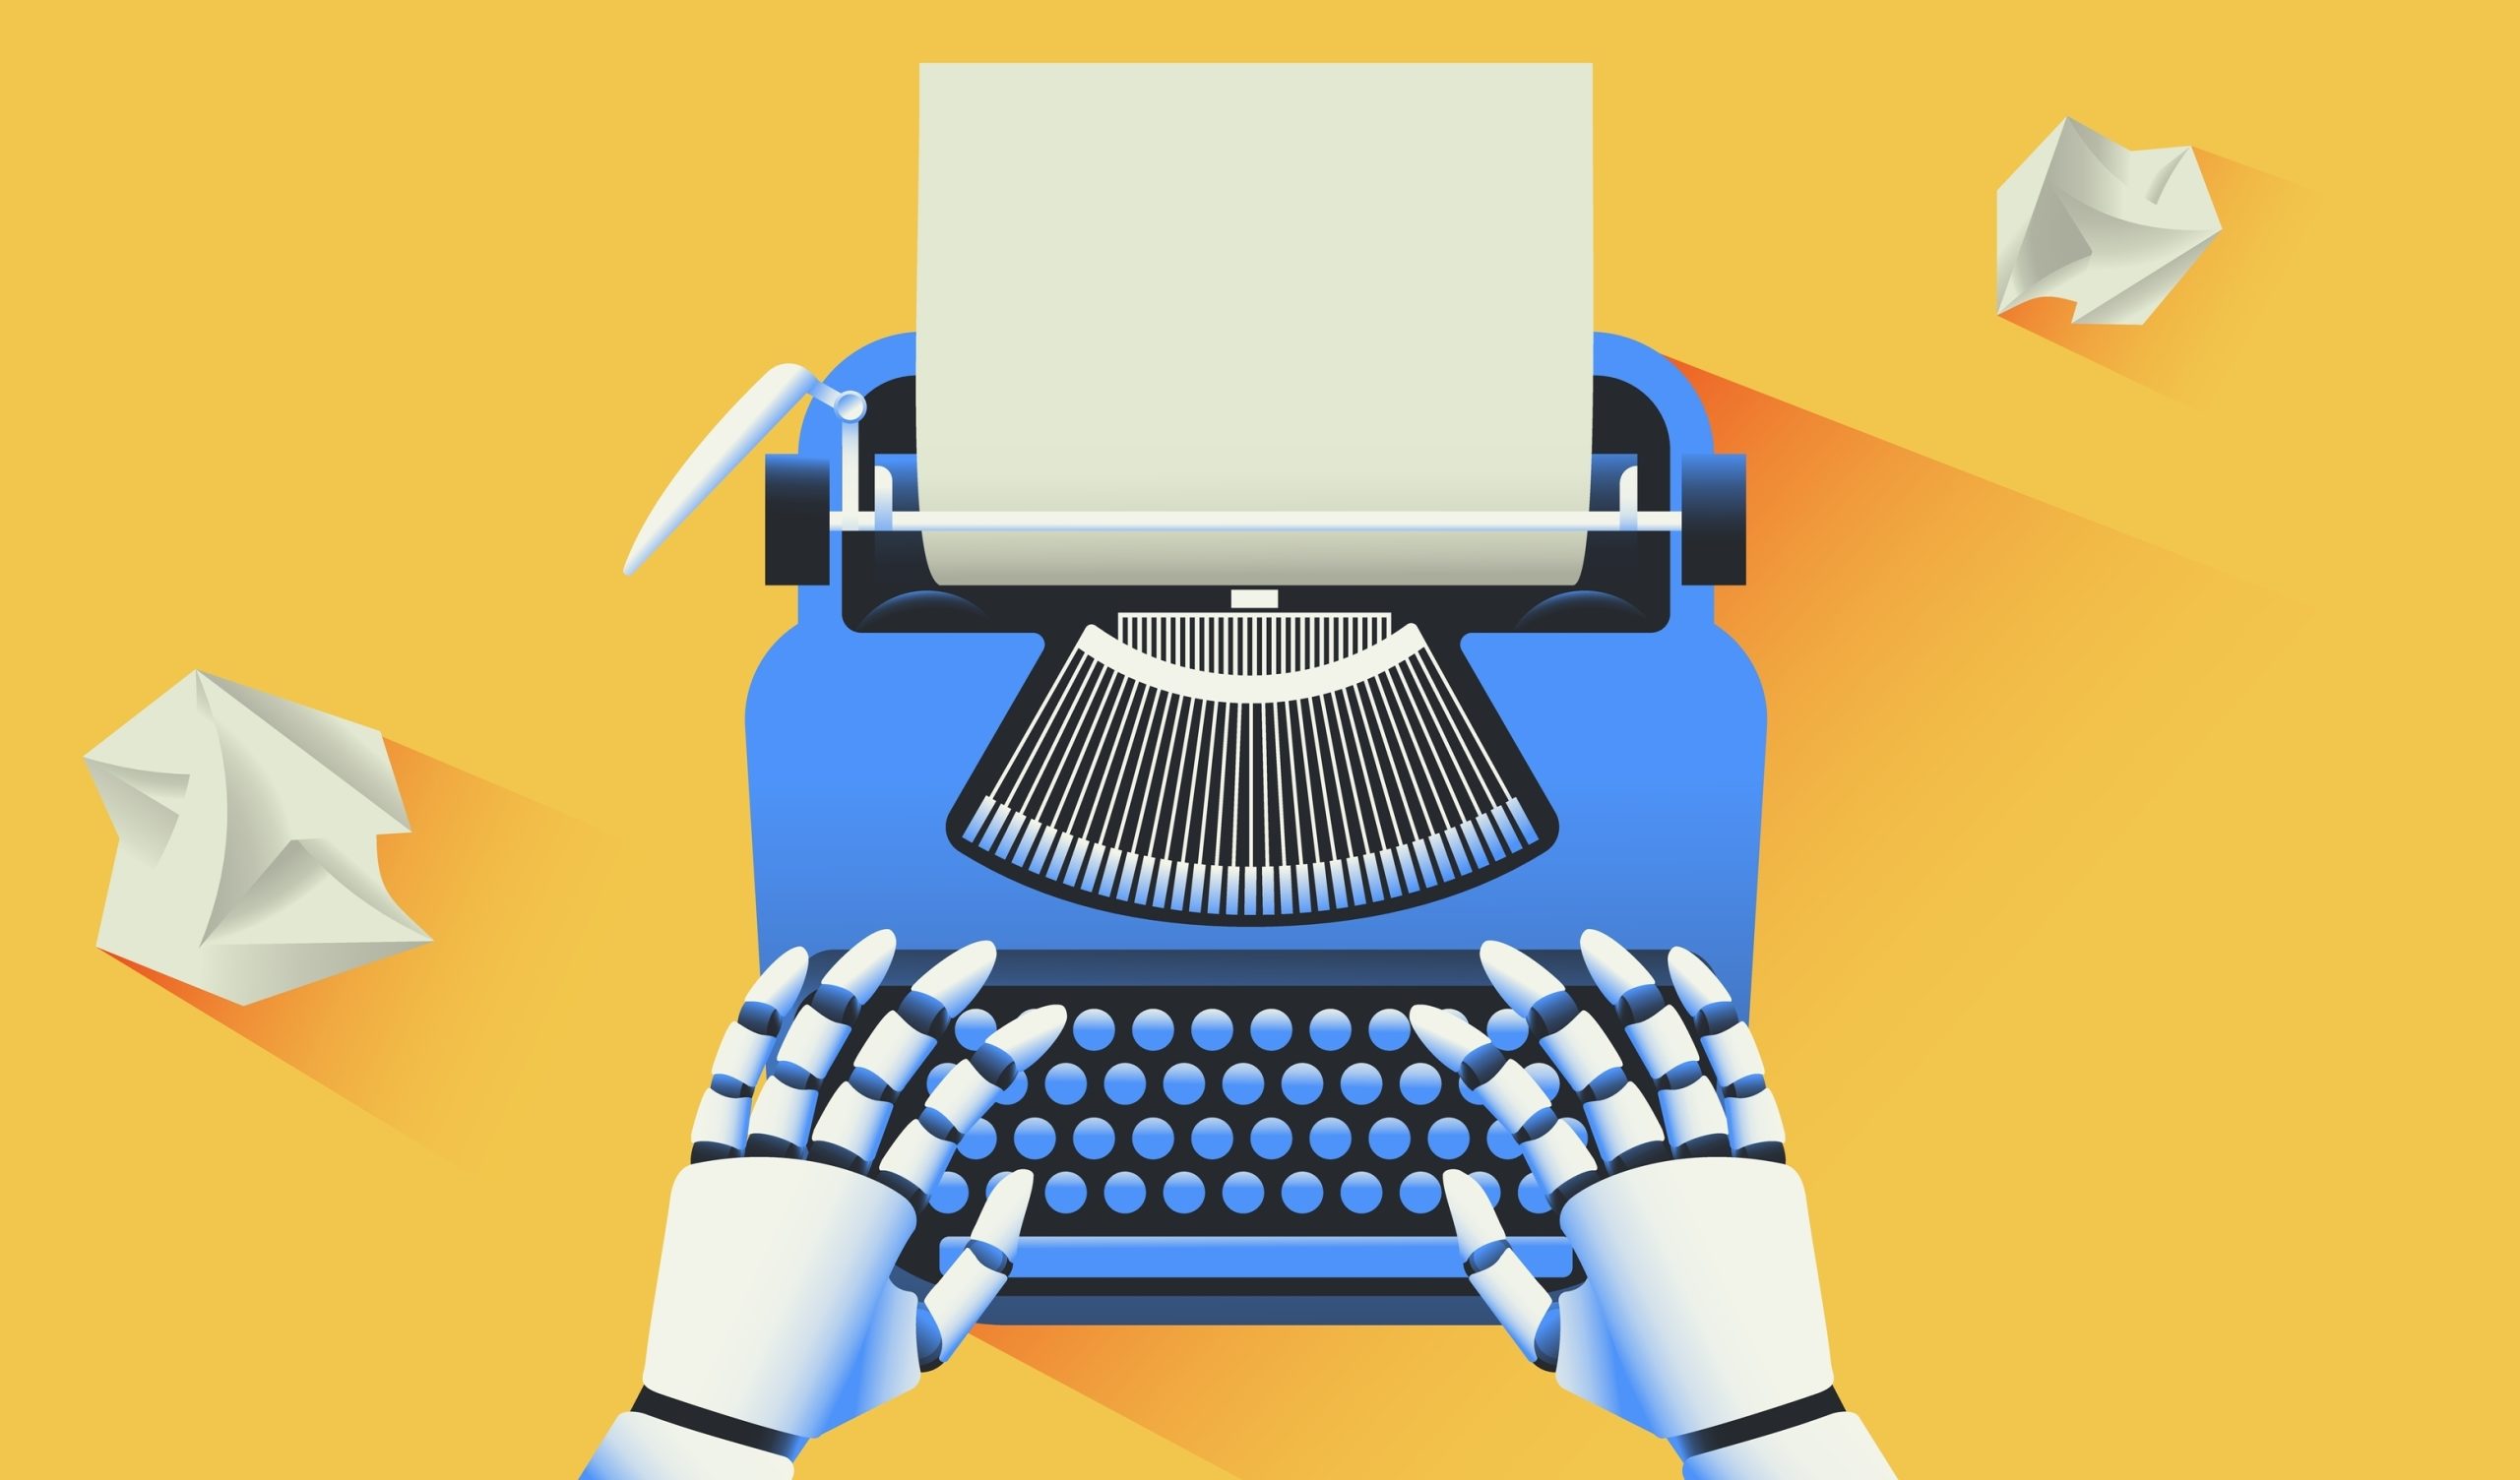 Imagem mostra mãos robóticas digitando em uma máquina de escrever, simbolizando a Genesis AI